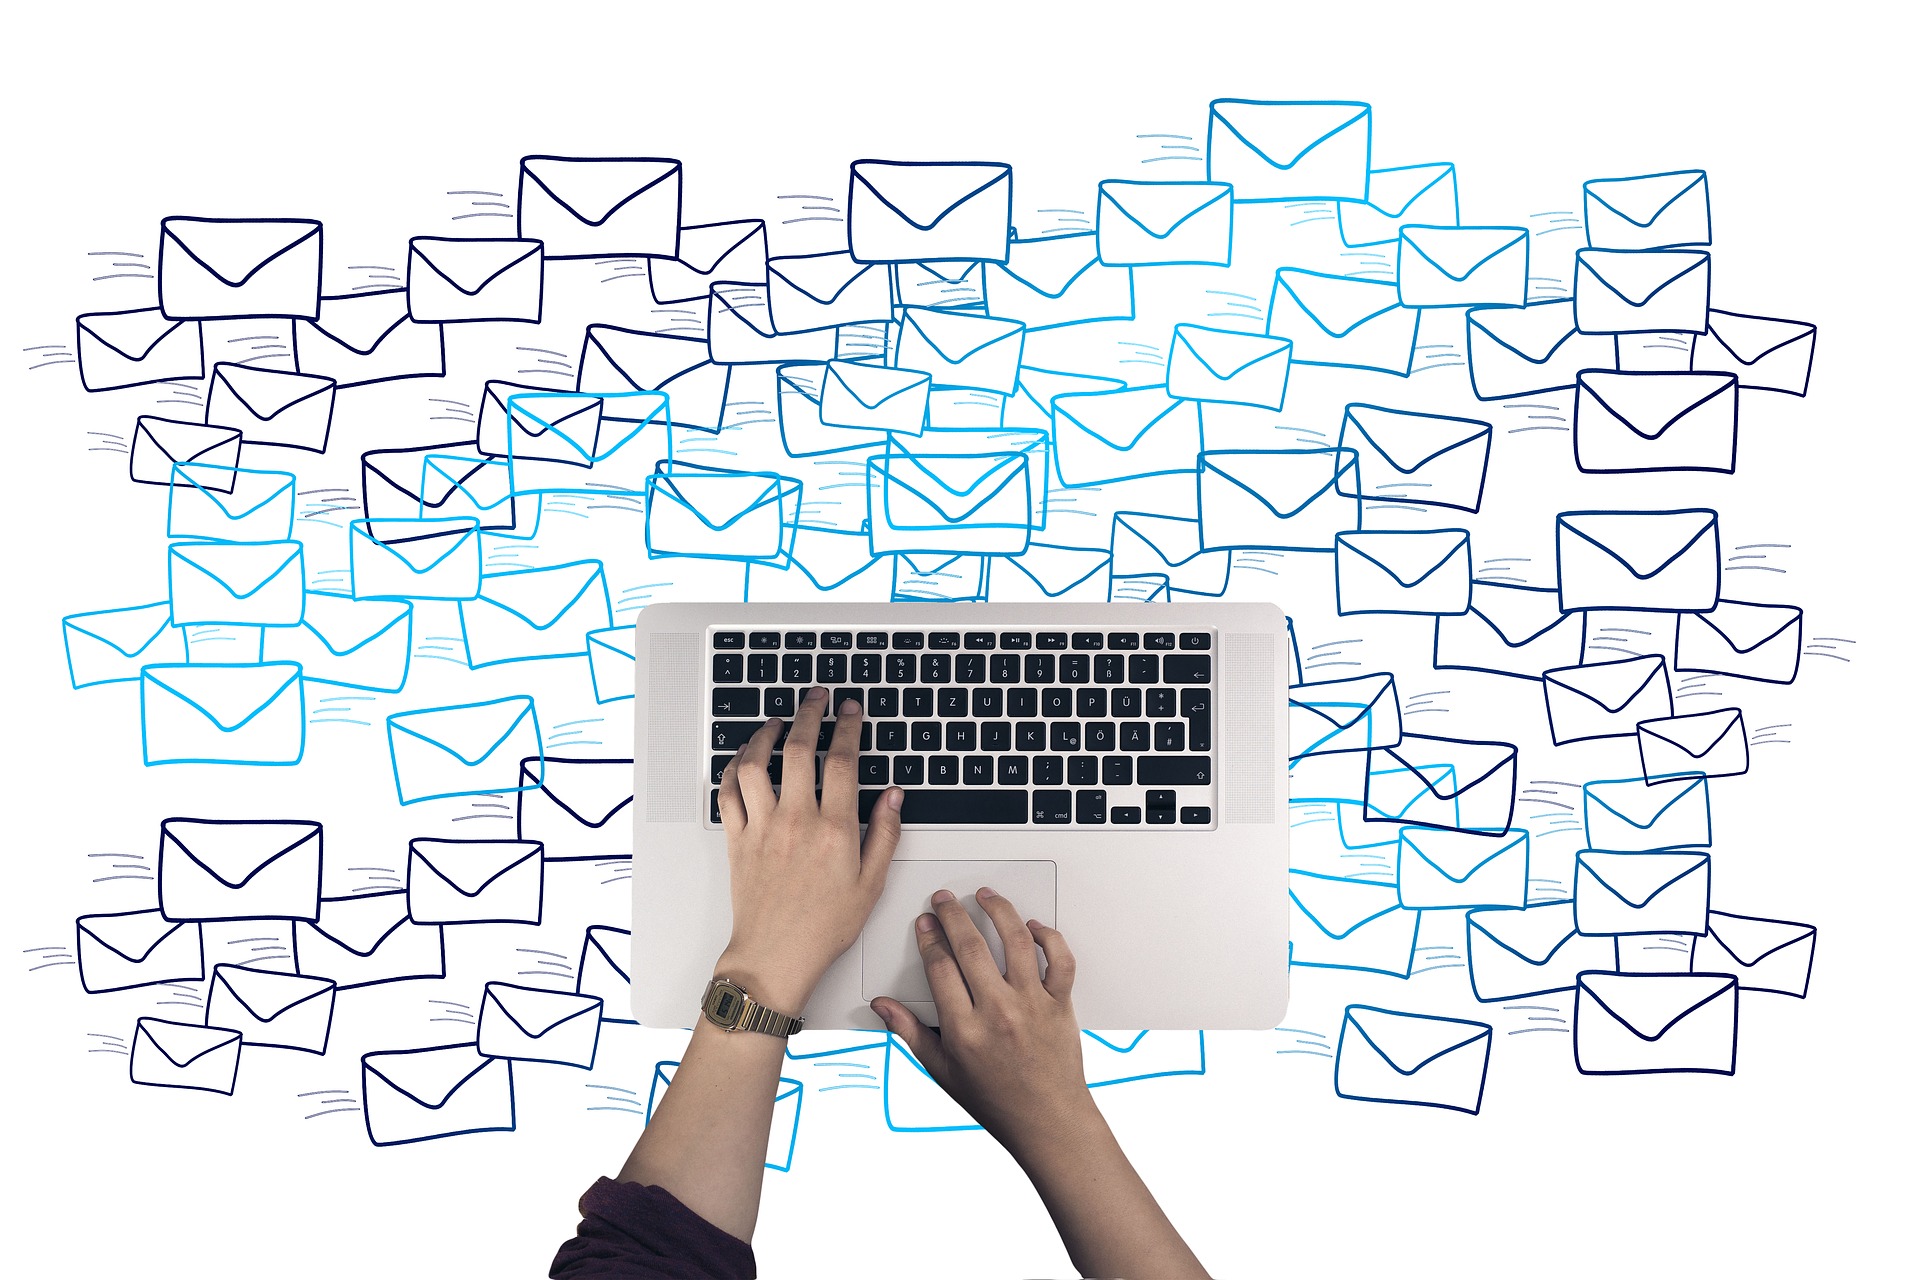 La decisión de Microsoft que afecta al email marketing. Email marketing y envío masivo de emails a través de una herramienta de email marketing teenvio